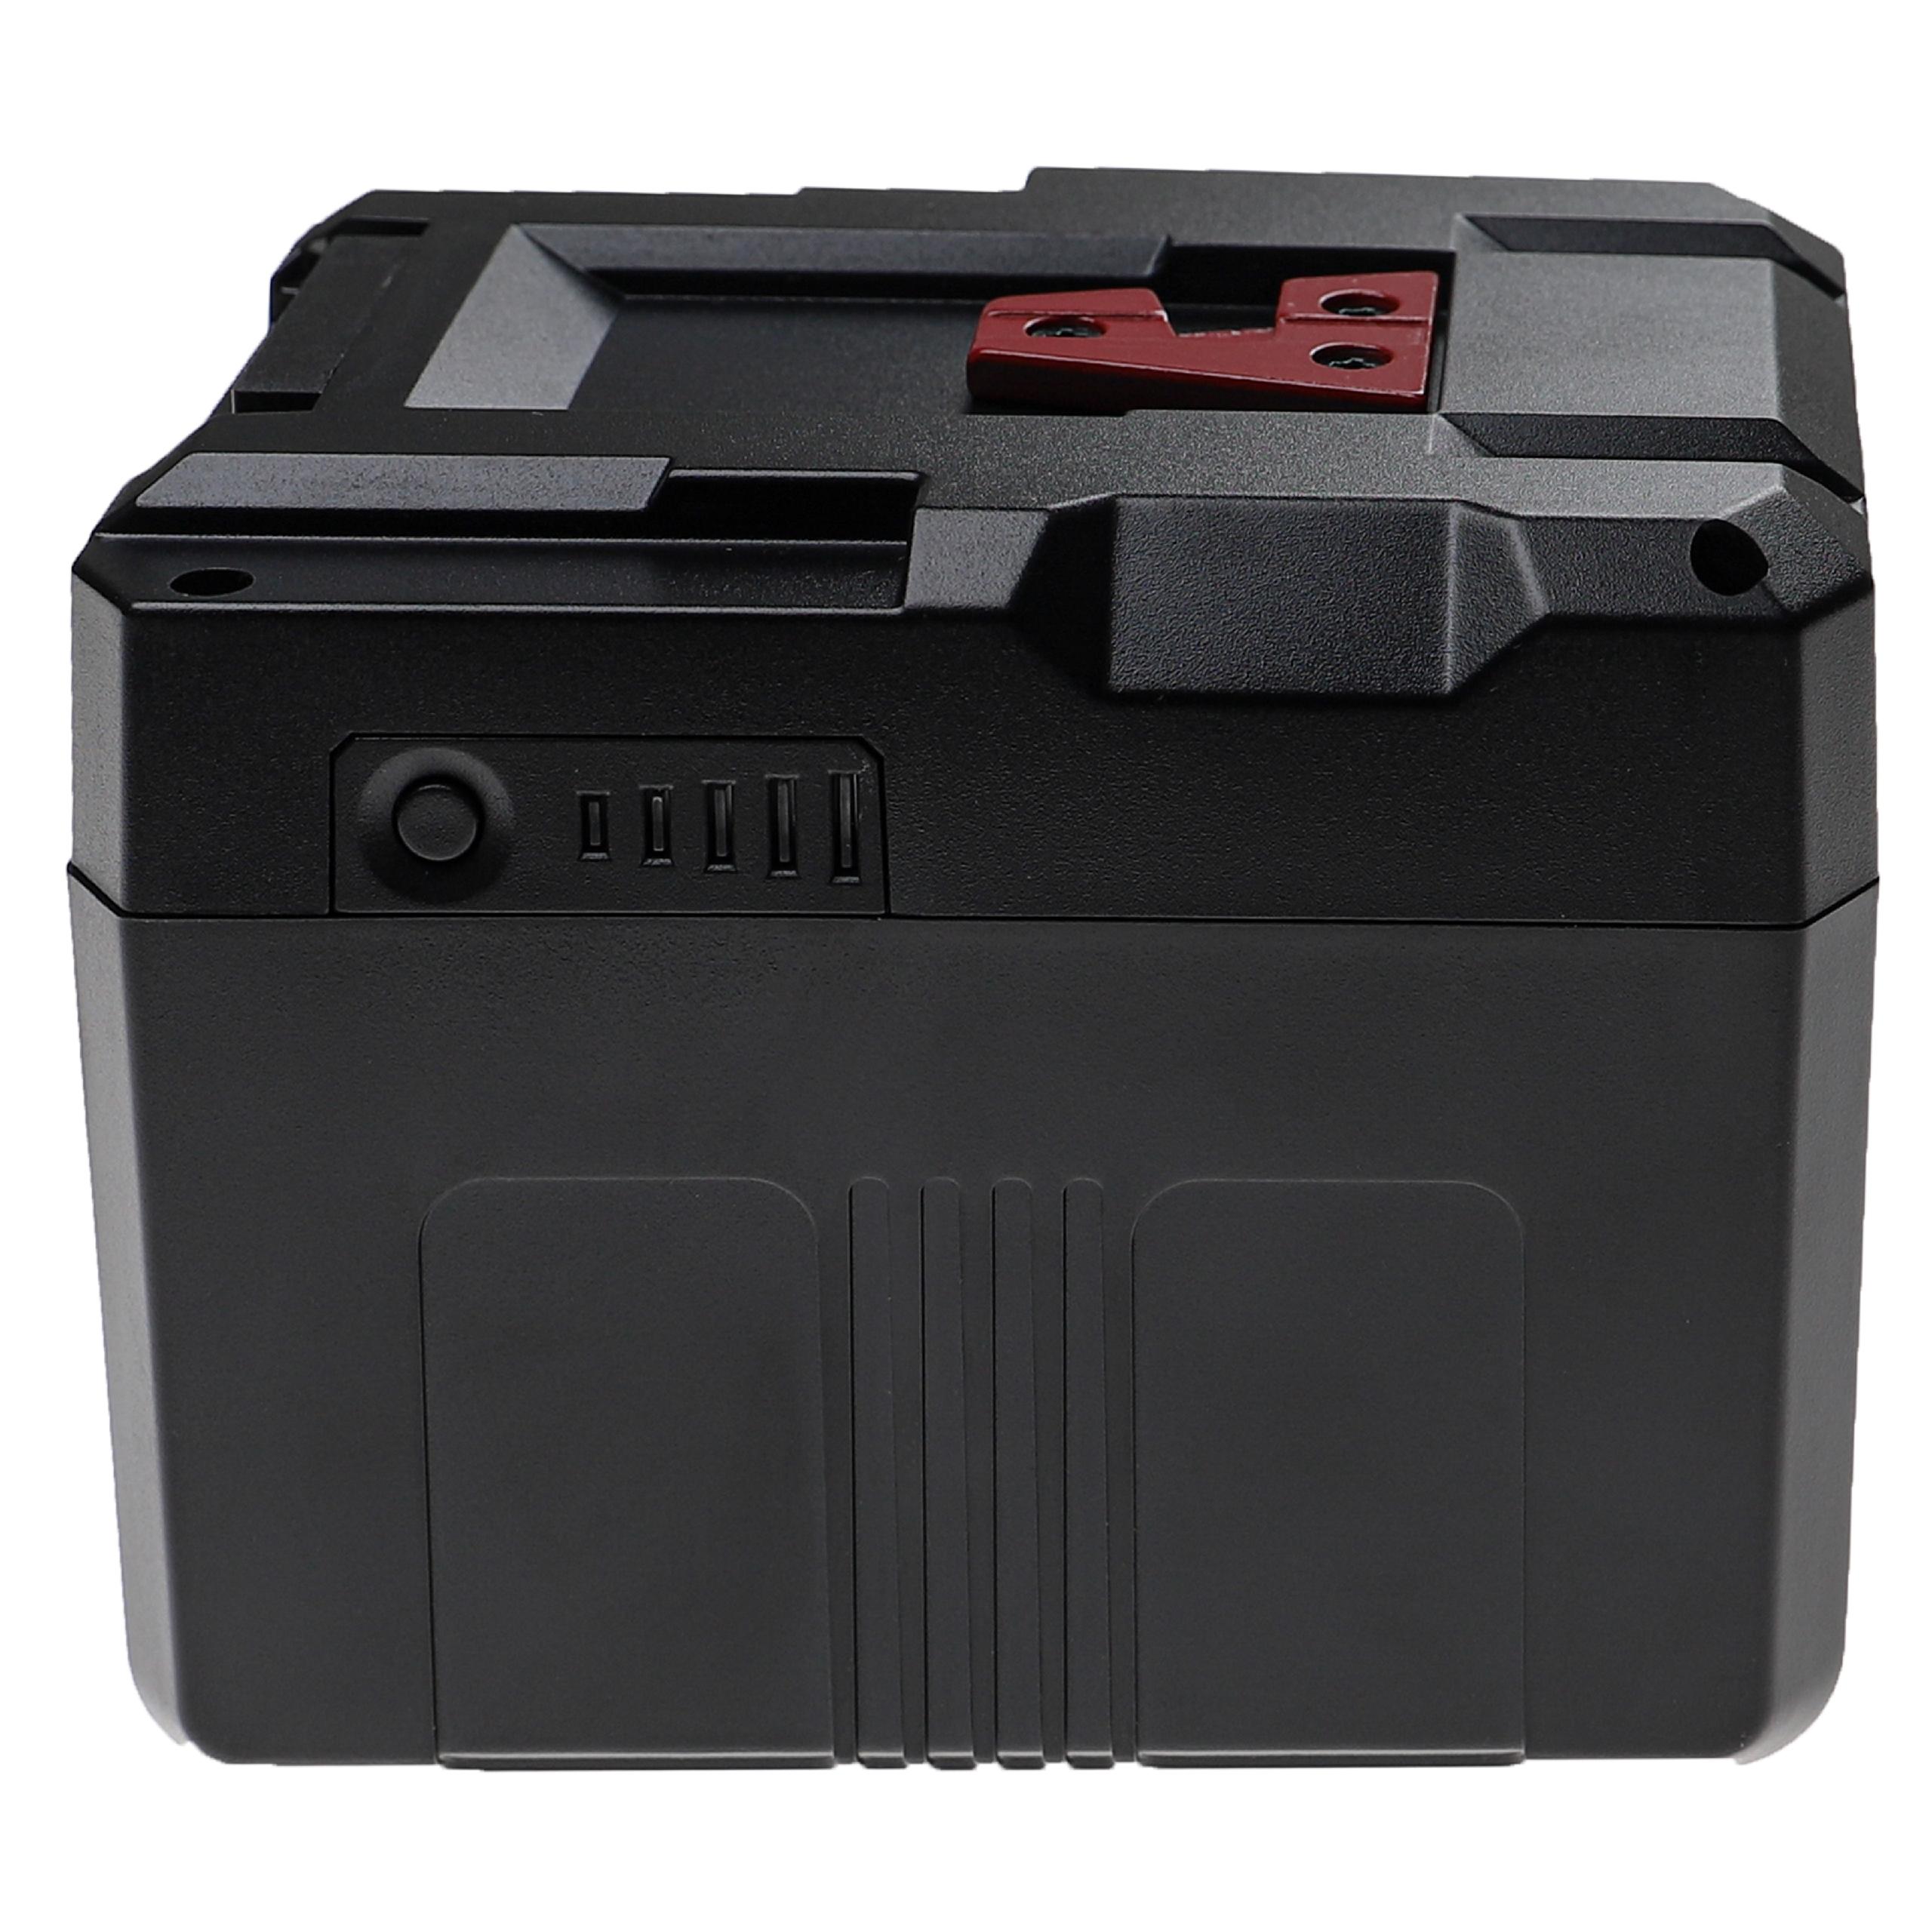 Akumulator do kamery cyfrowej / wideo zamiennik Sony BP-150w, BP-150WS, BP-190S - 15600 mAh 14,8 V Li-Ion